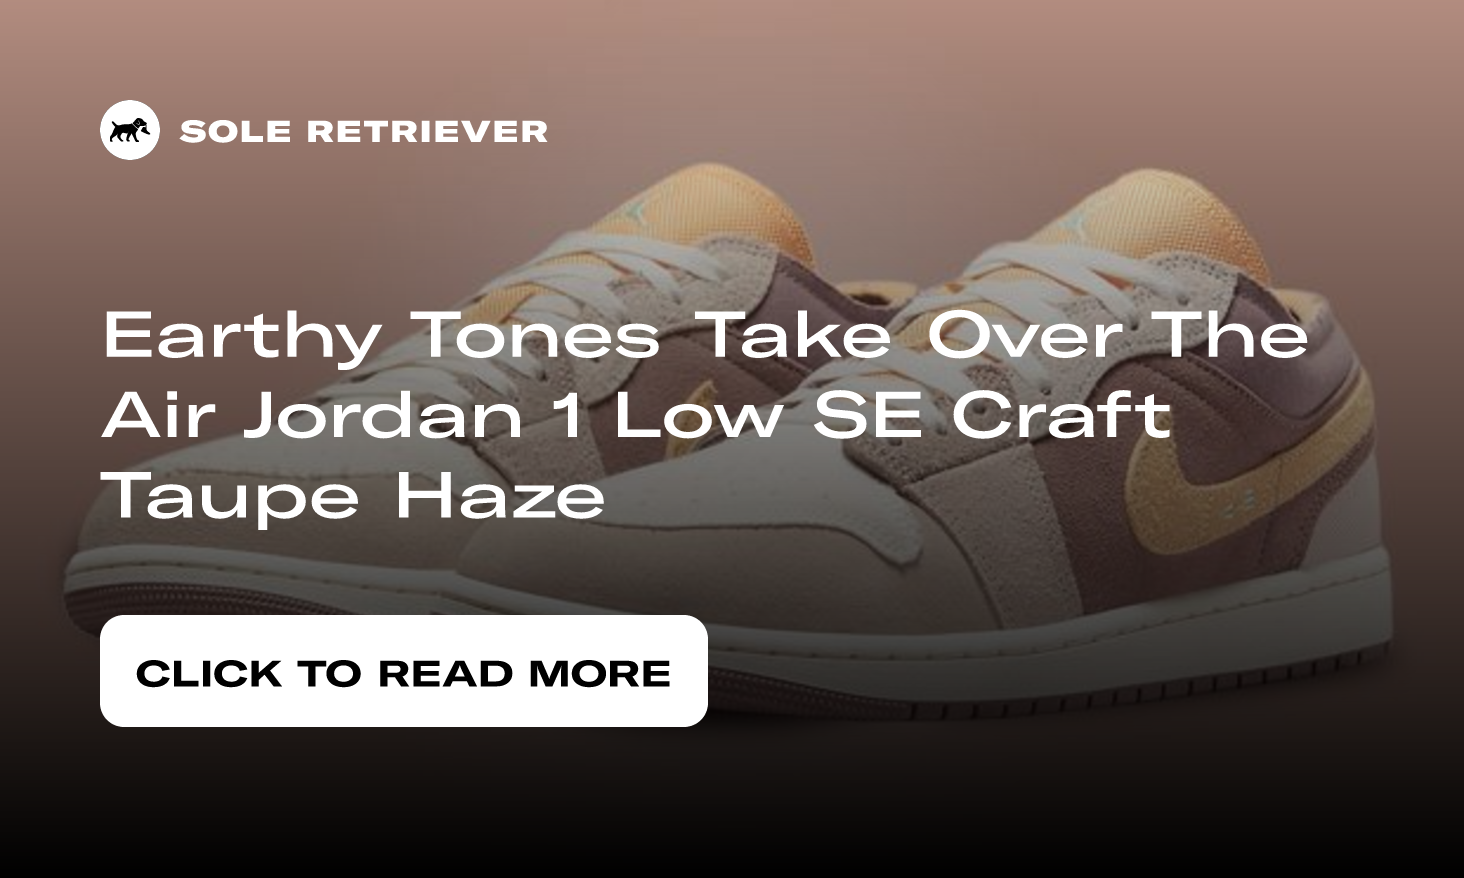 Air Jordan 1 Low SE Craft Inside Out - Taupe Haze